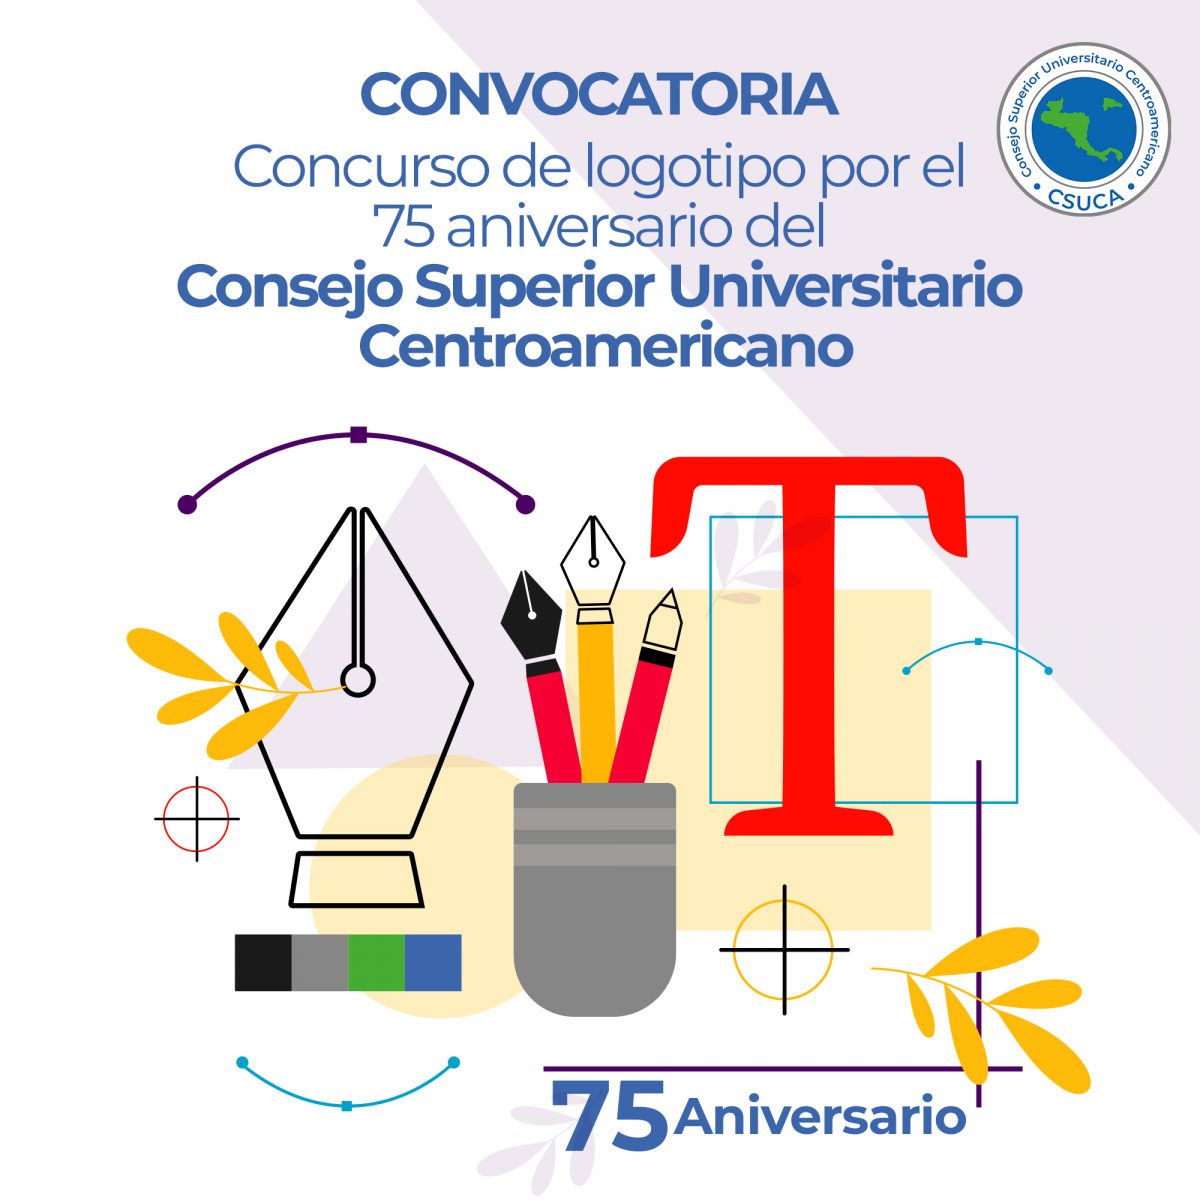 Convocatoria para concurso de logotipo por el 75 aniversario del Consejo Superior Universitario Centroamericano